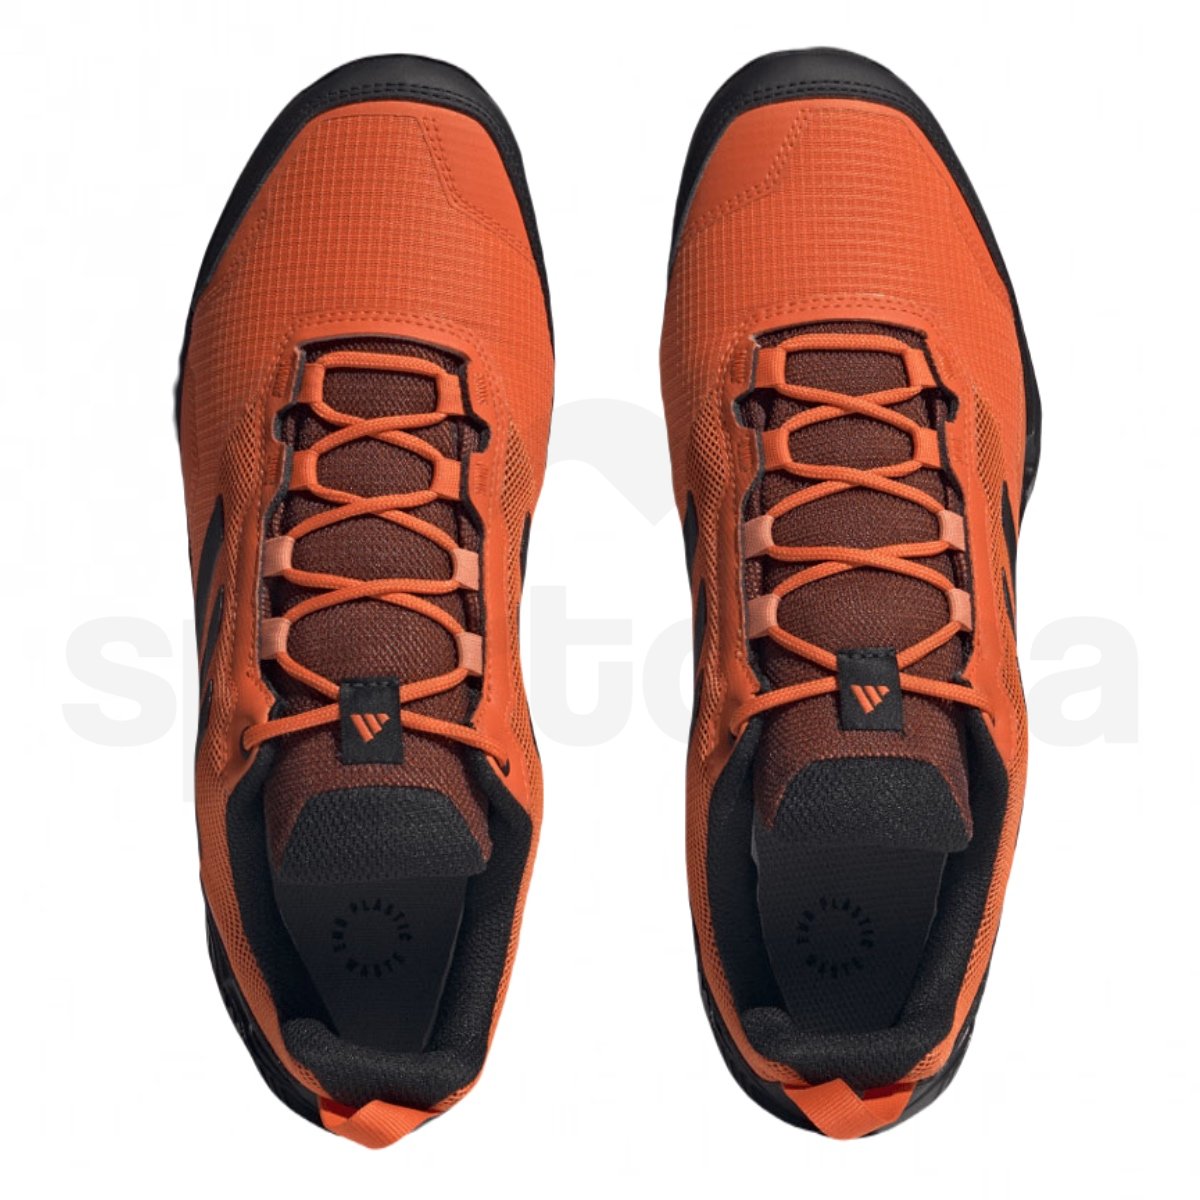 Obuv Adidas Terrex Eastrail GTX M - černá/oranžová